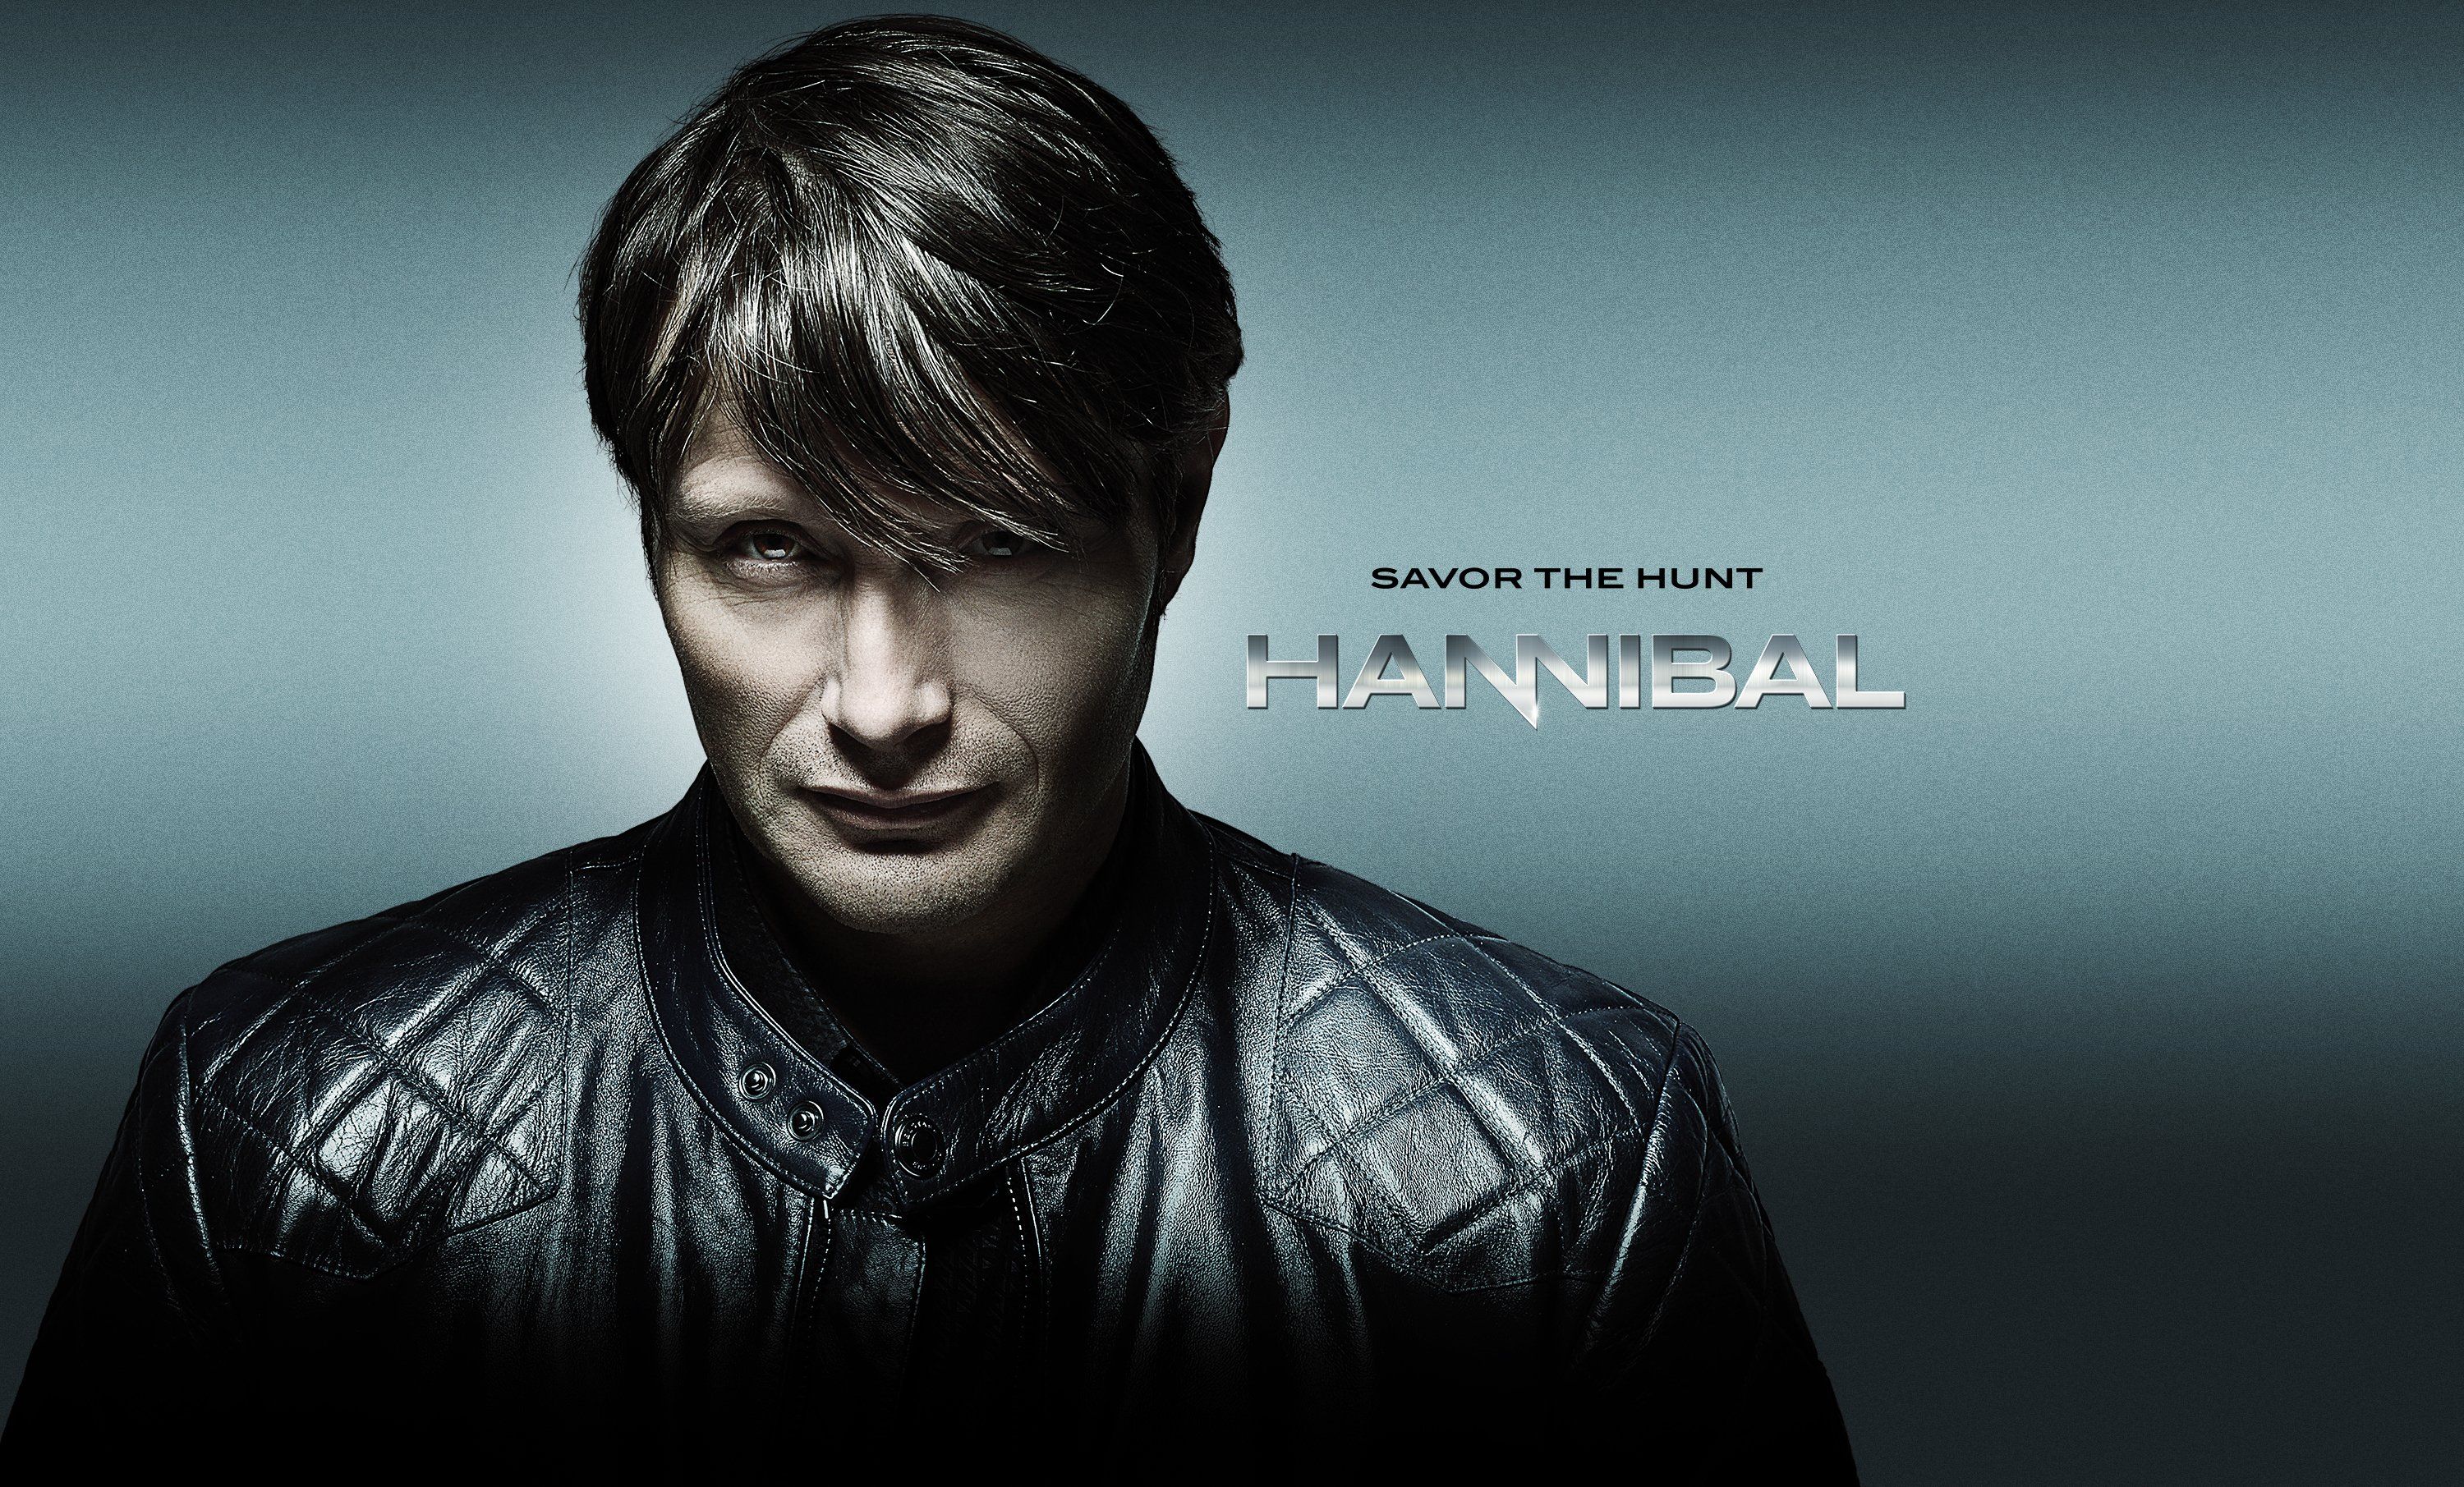 Hannibal #season3